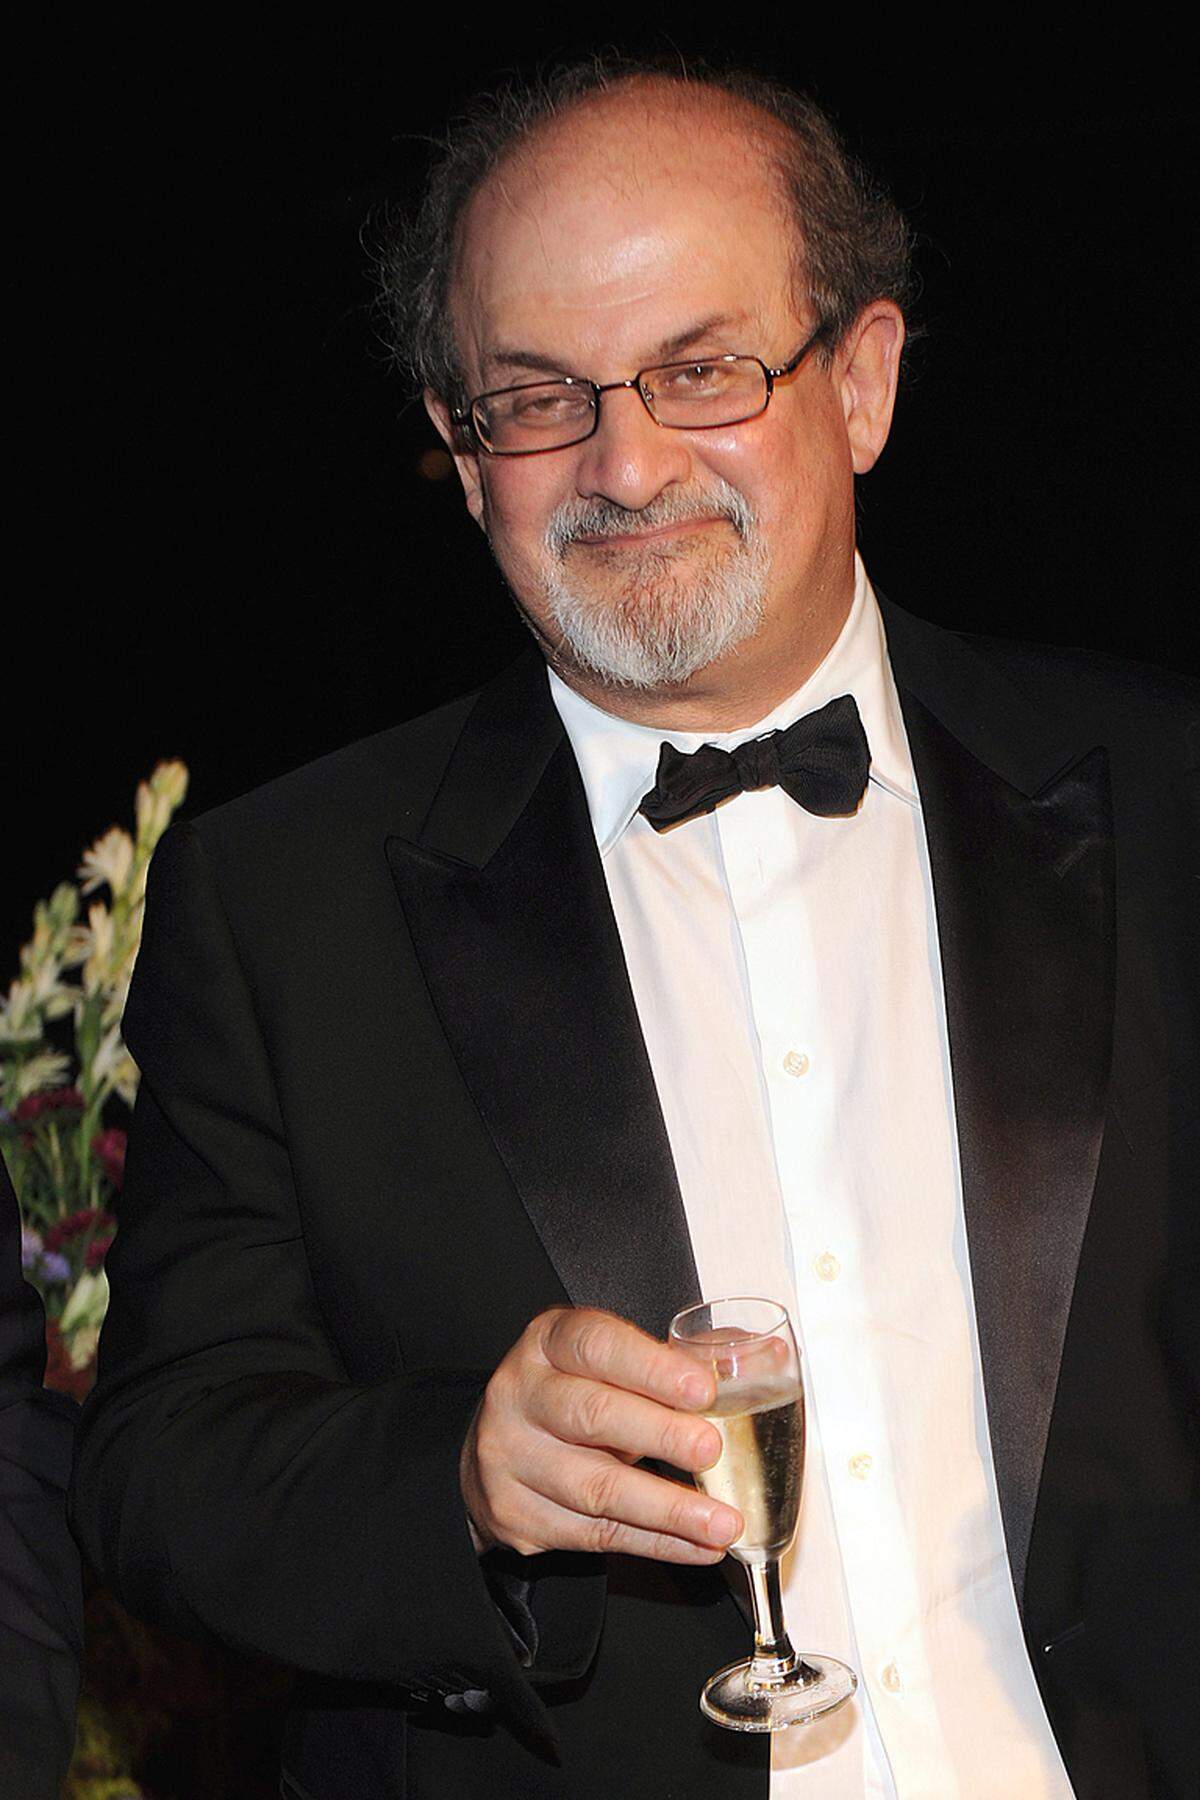 Der britisch-indische Schriftsteller Salman Rushdie, der zum Favoritenkreis zählt, gratulierte: Munro sei "eine wahre Meisterin ihrer Form", schrieb der 66-Jährige Rushdie beim Kurznachrichtendienst Twitter. Er habe einmal eine Edition der besten amerikanischen Kurzgeschichten herausgegeben, schrieb Rushdie weiter. "Ich wollte gleich drei von ihr nehmen."